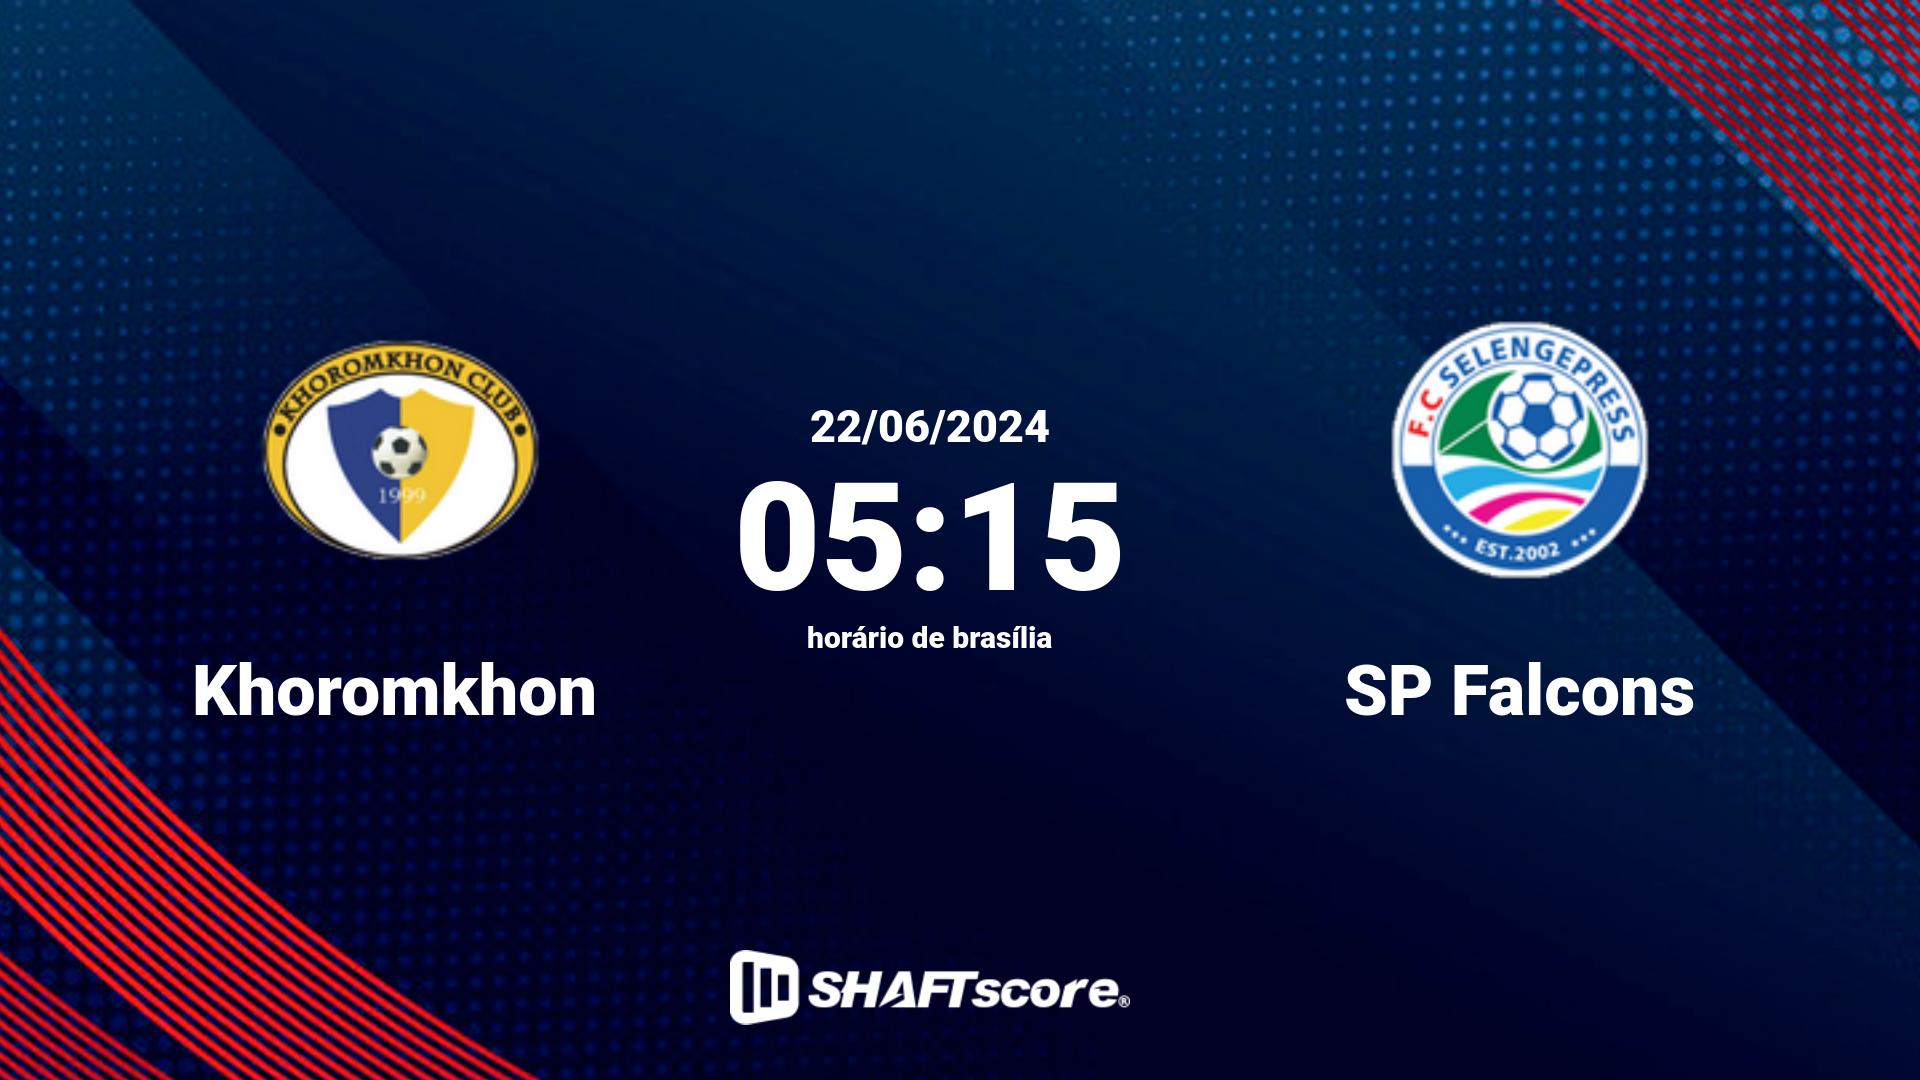 Estatísticas do jogo Khoromkhon vs SP Falcons 22.06 05:15